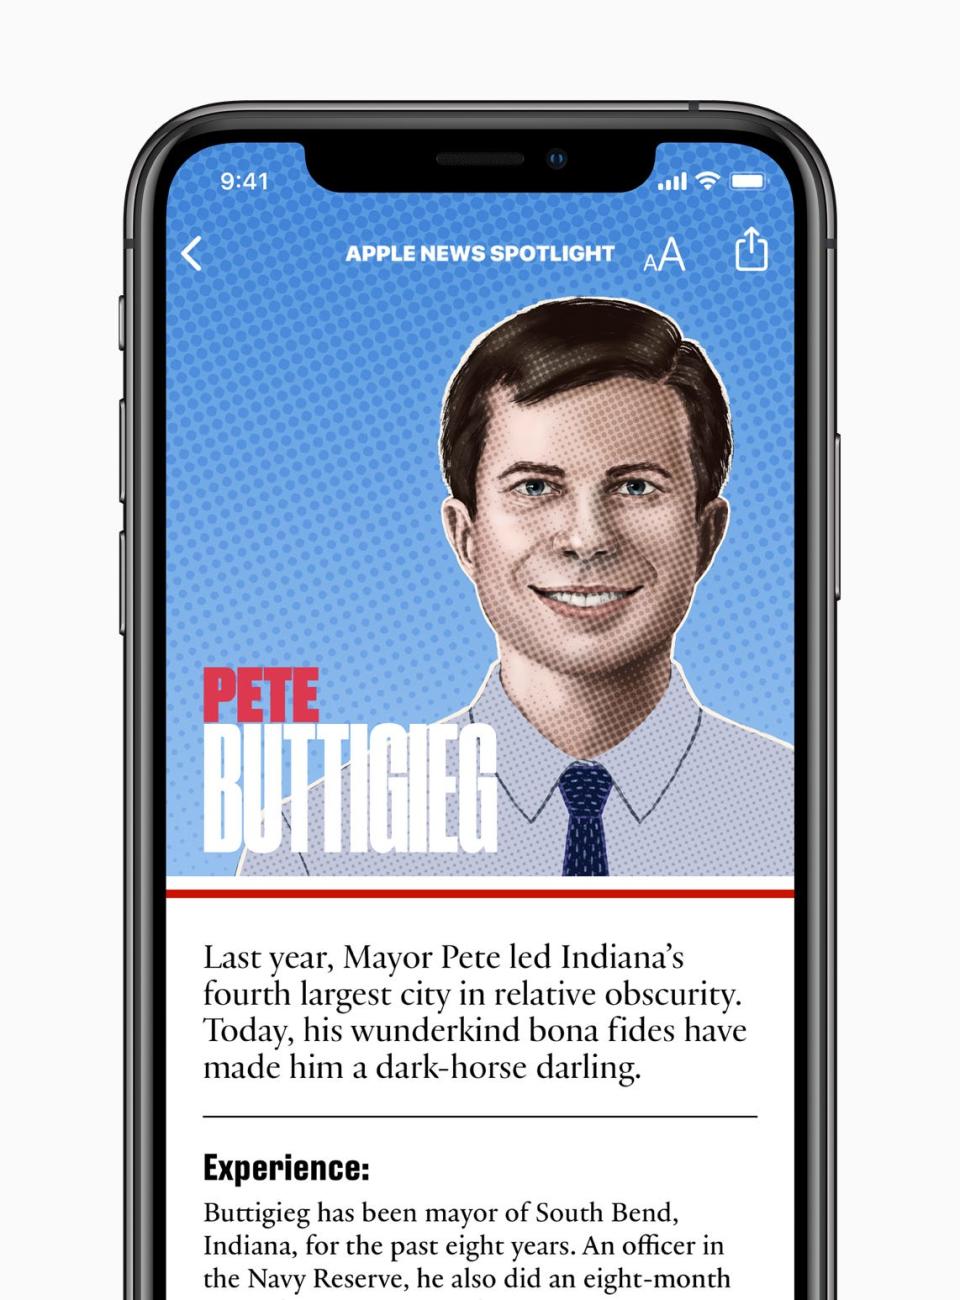 Apple News profile guide for Pete Buttigieg